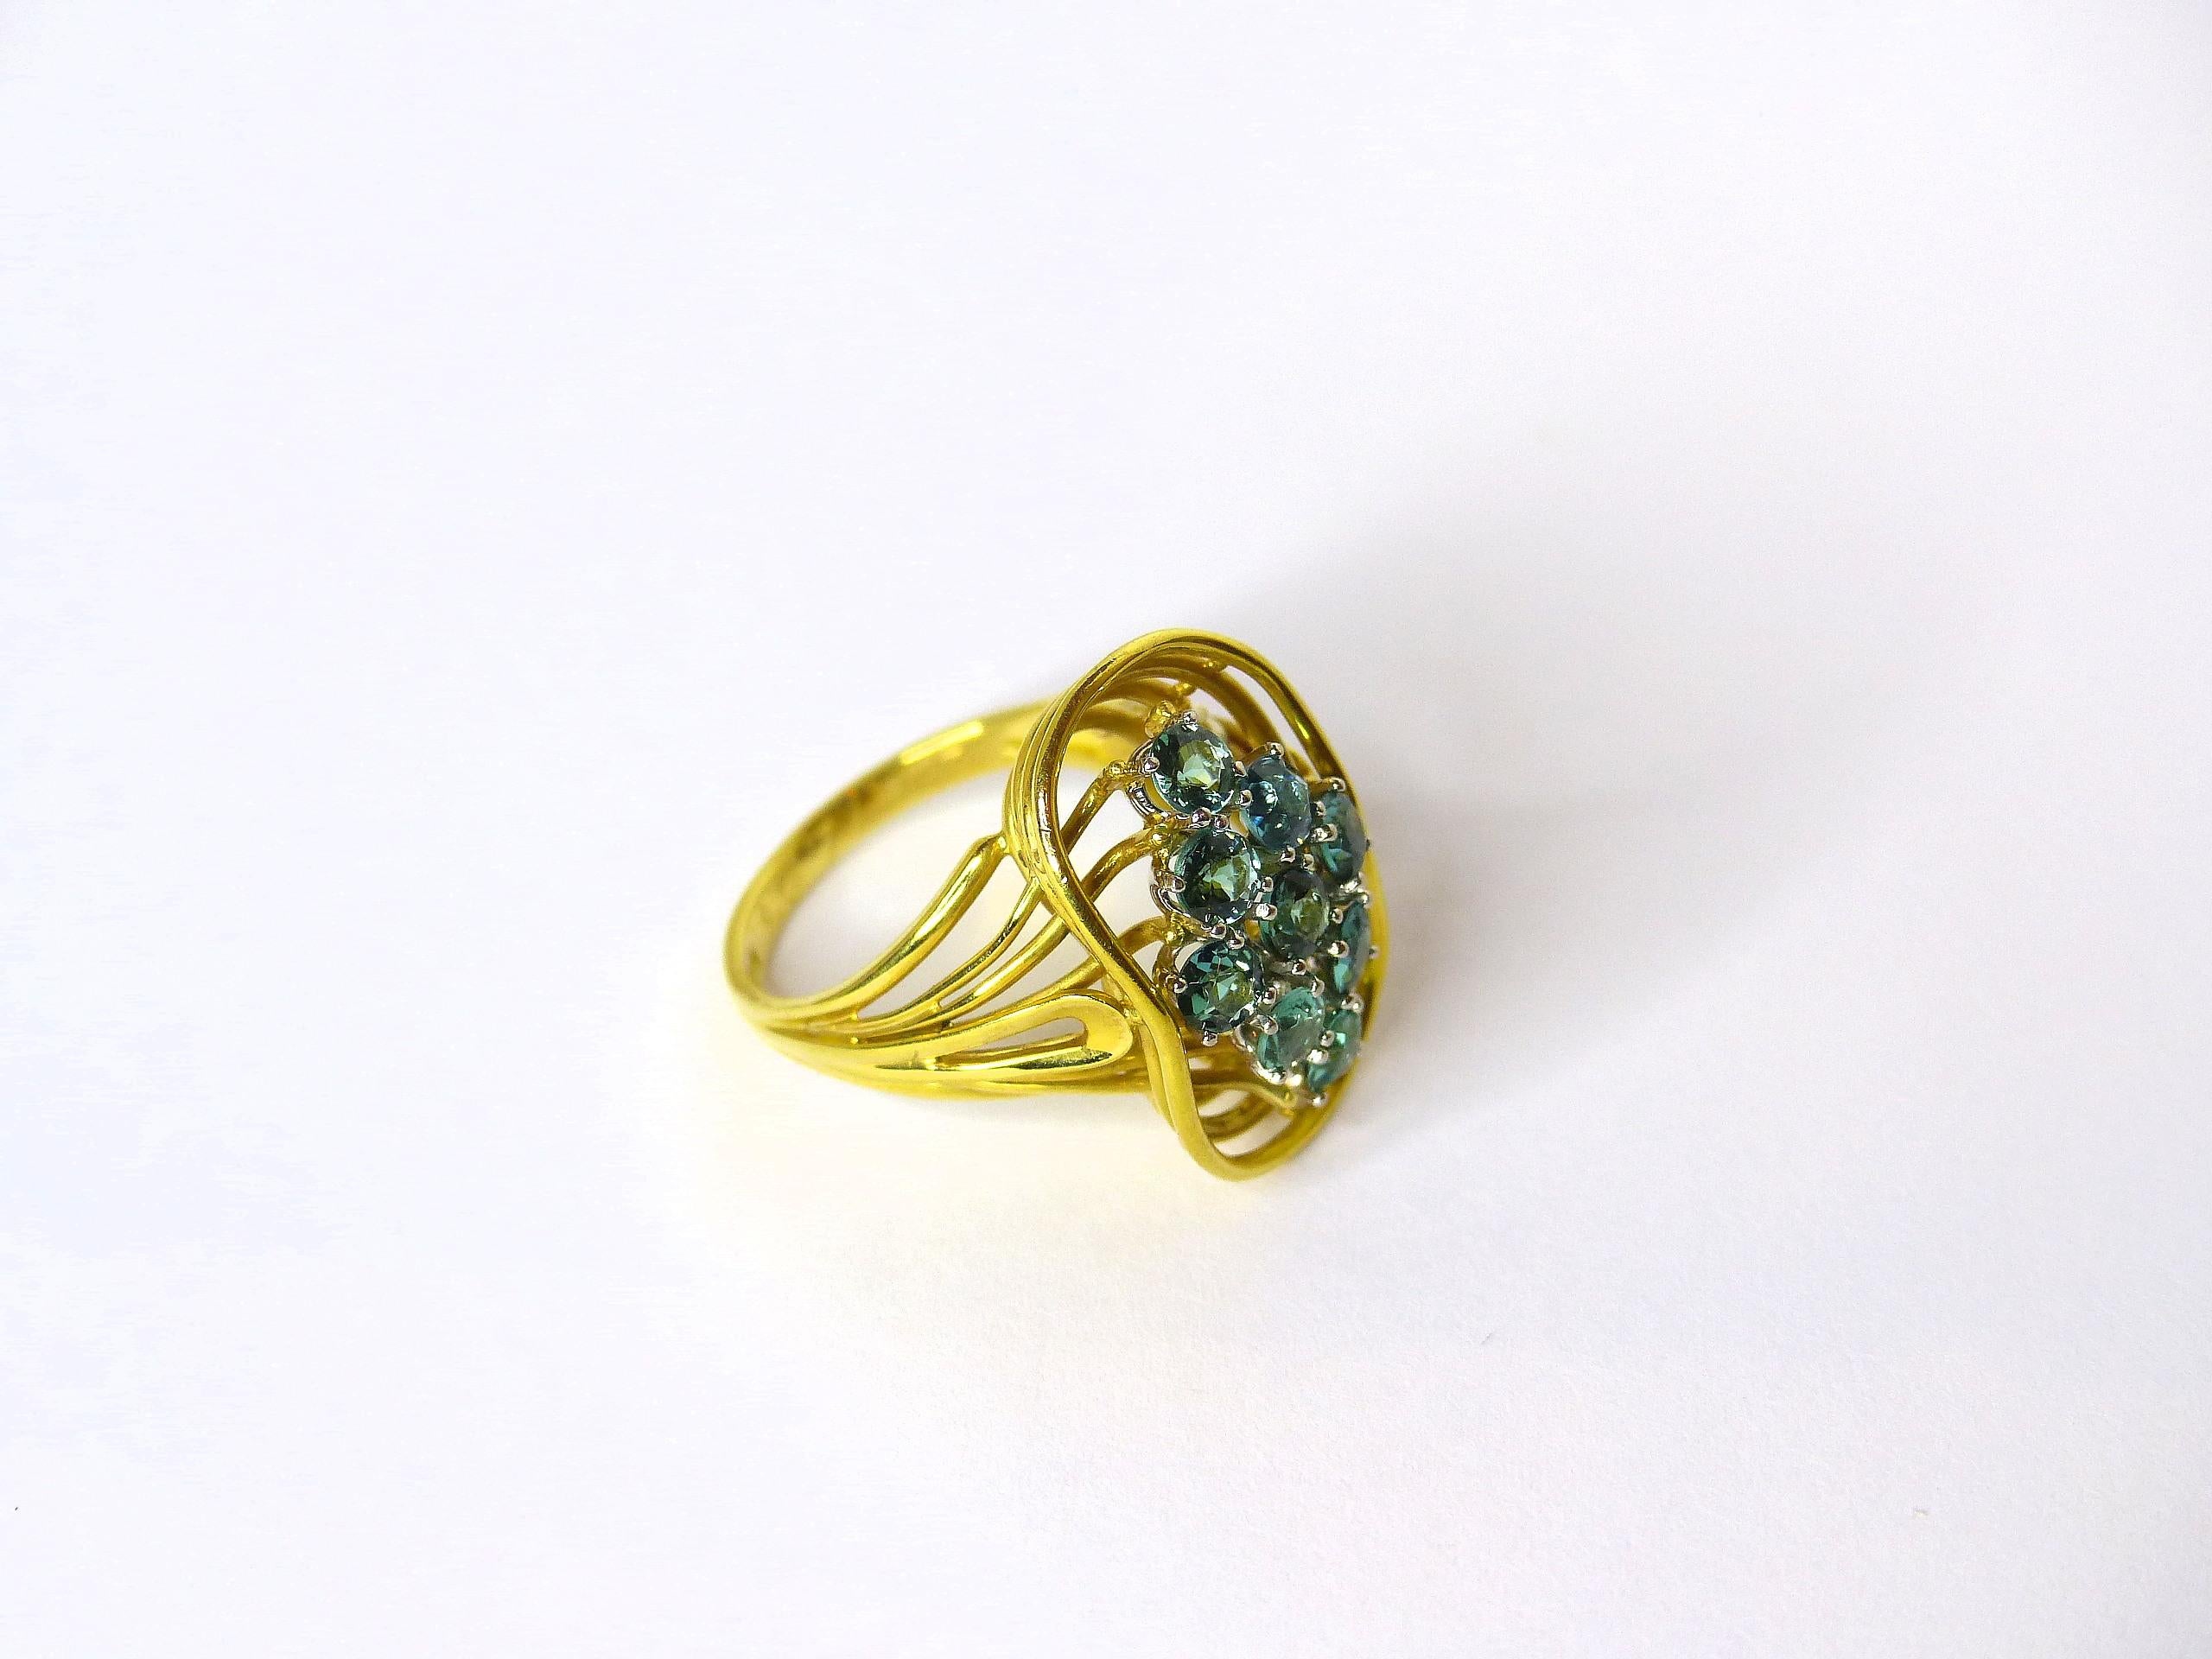 Thomas Leyser ist bekannt für seine zeitgenössischen Schmuckentwürfe unter Verwendung edler Edelsteine.

Dieser Ring aus 14k Gelbgold (8,52gr.) ist mit 9 Turmalinen höchster Qualität in prächtiger Farbe mit intensiver bläulicher/grünlicher Färbung